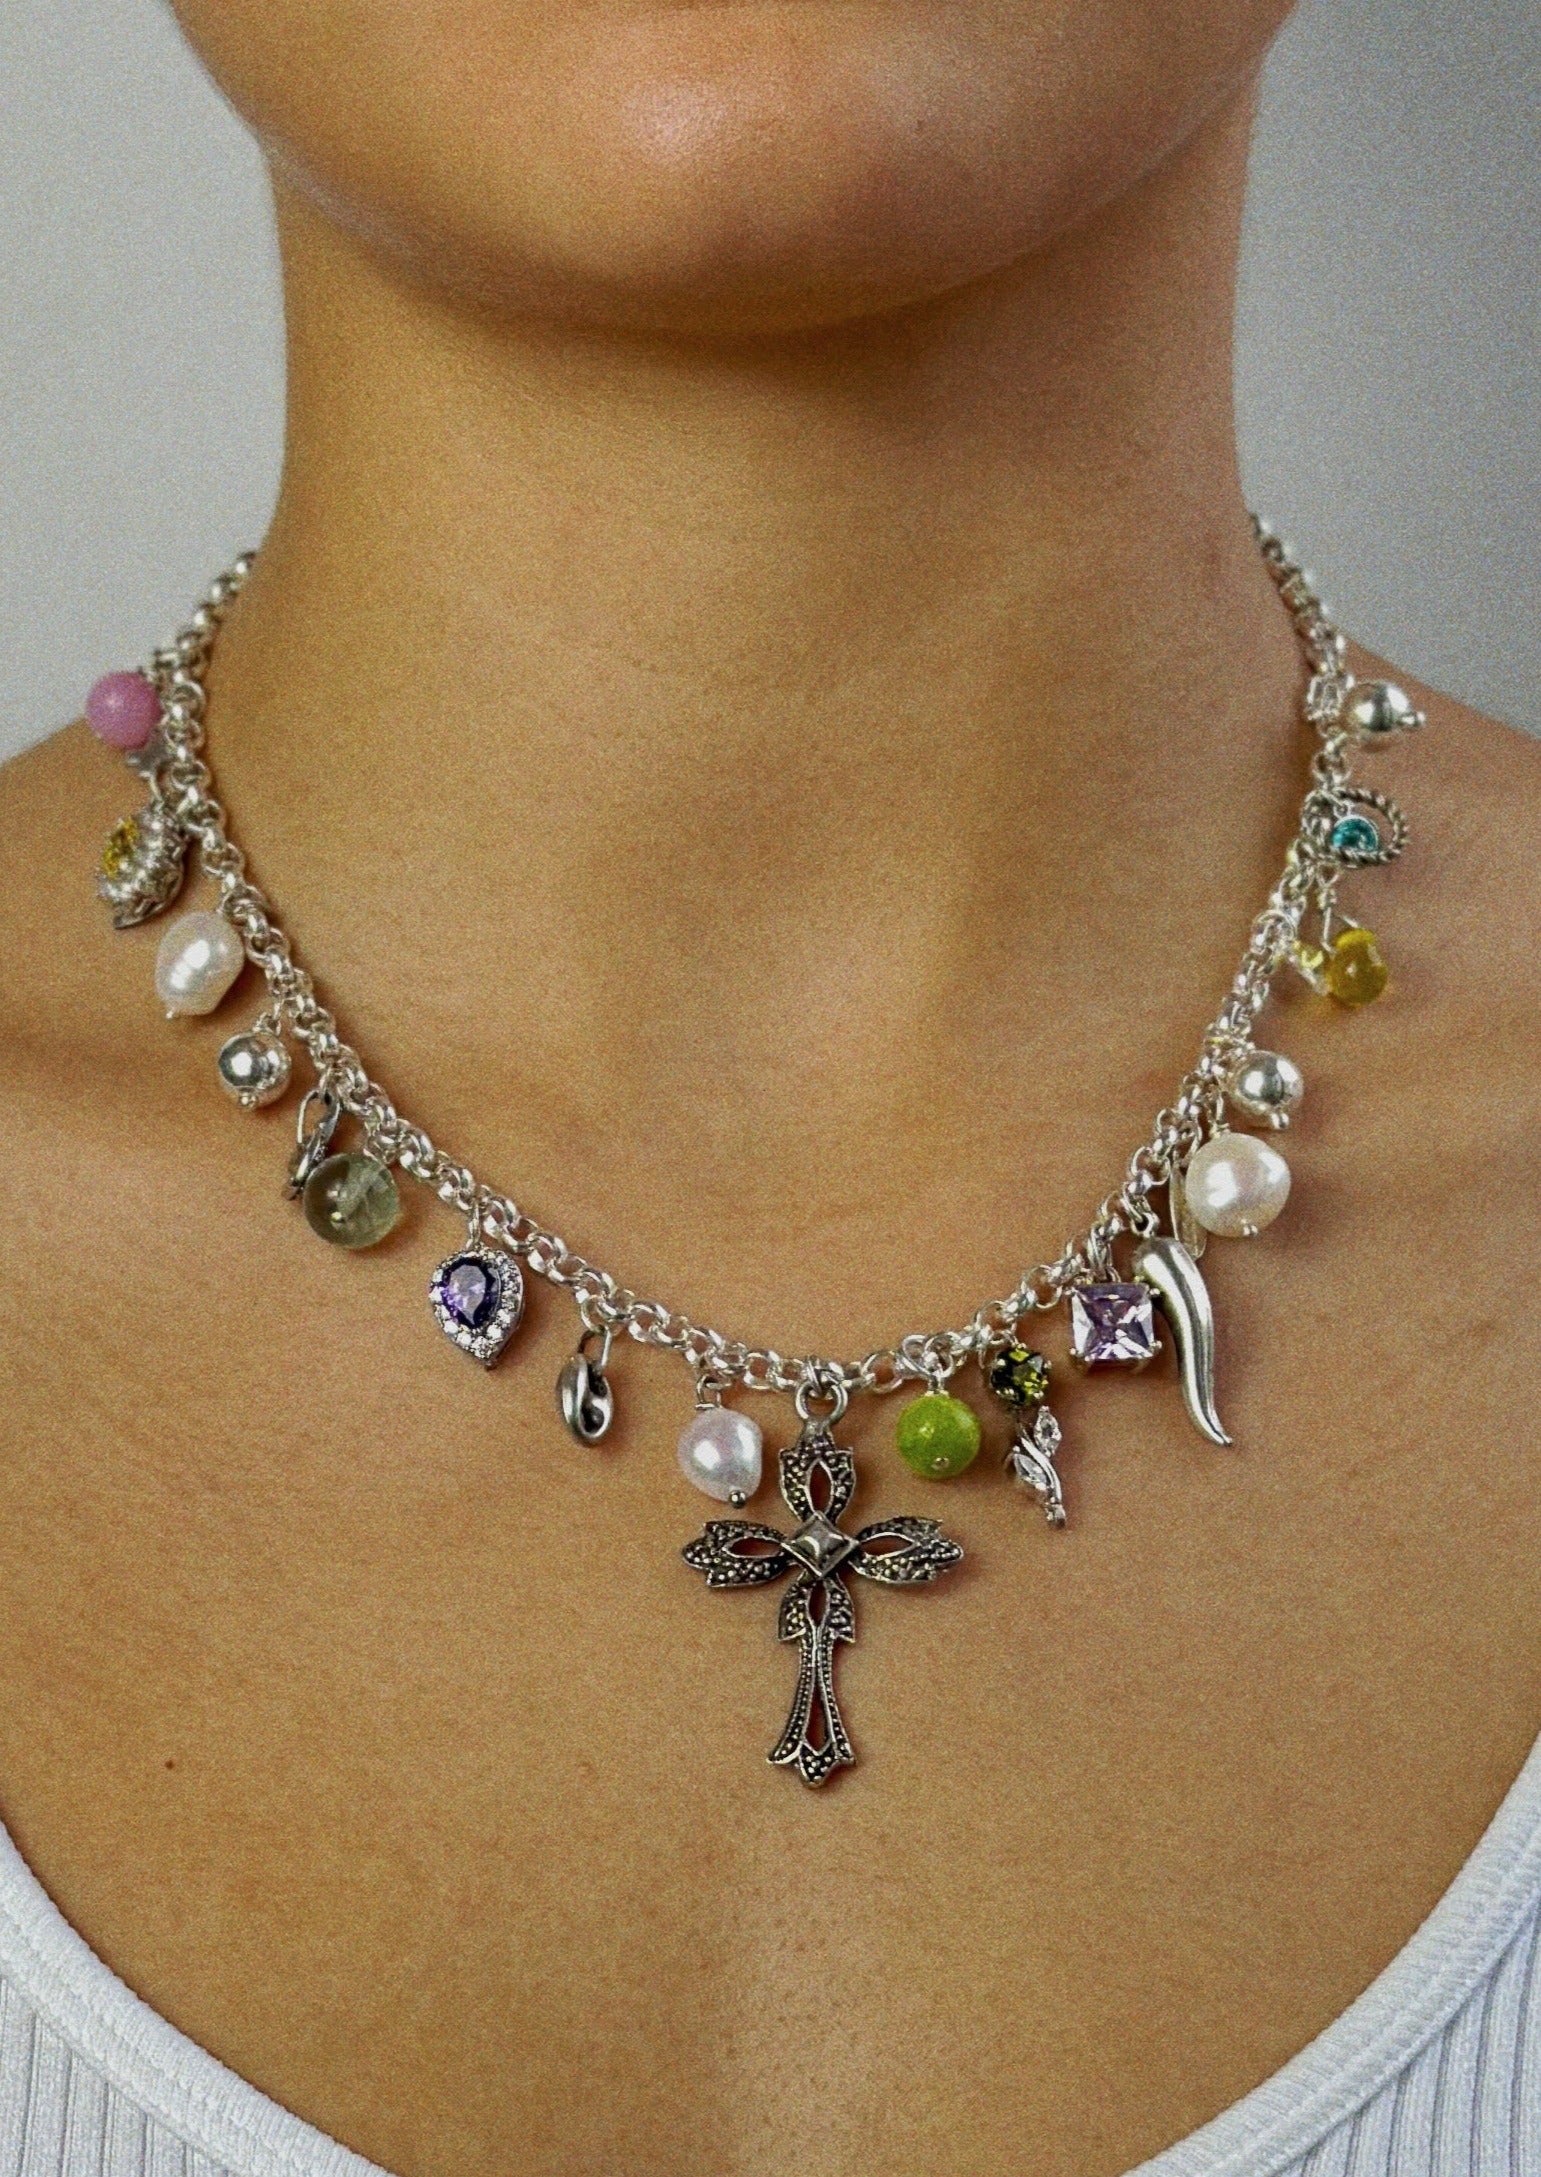 Collier - argent massif, cristaux, perles et pendentifs argent